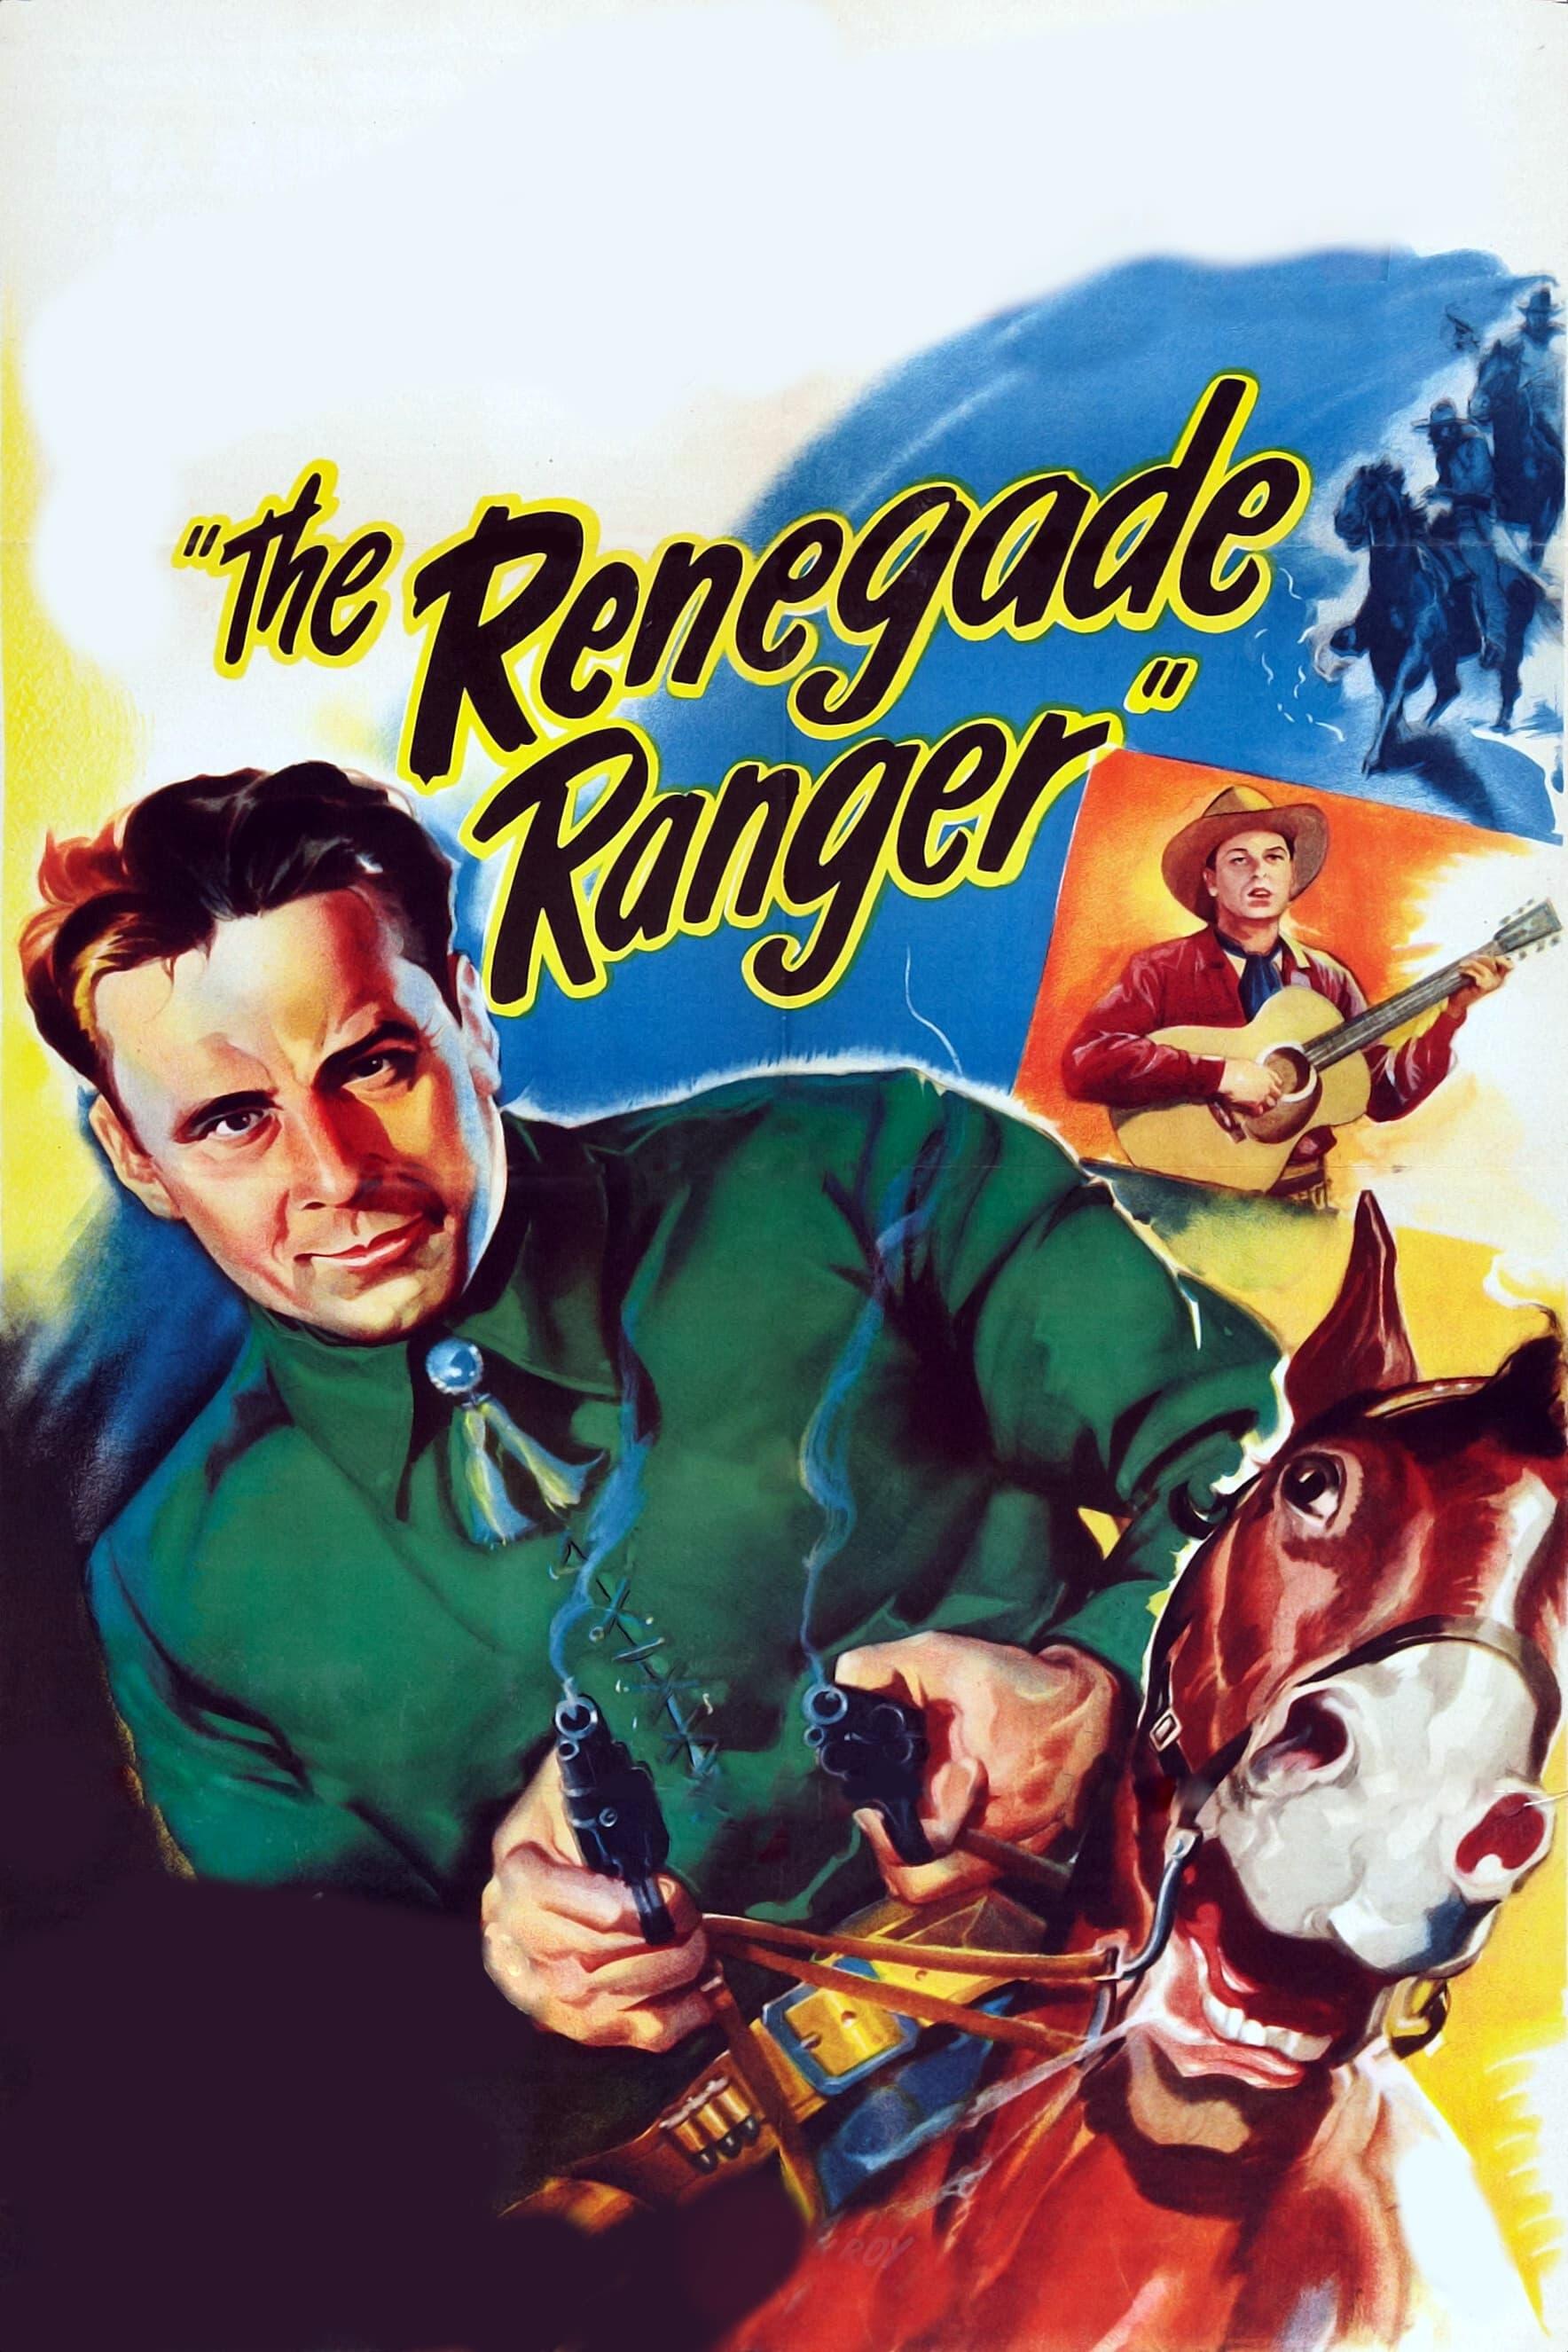 The Renegade Ranger poster